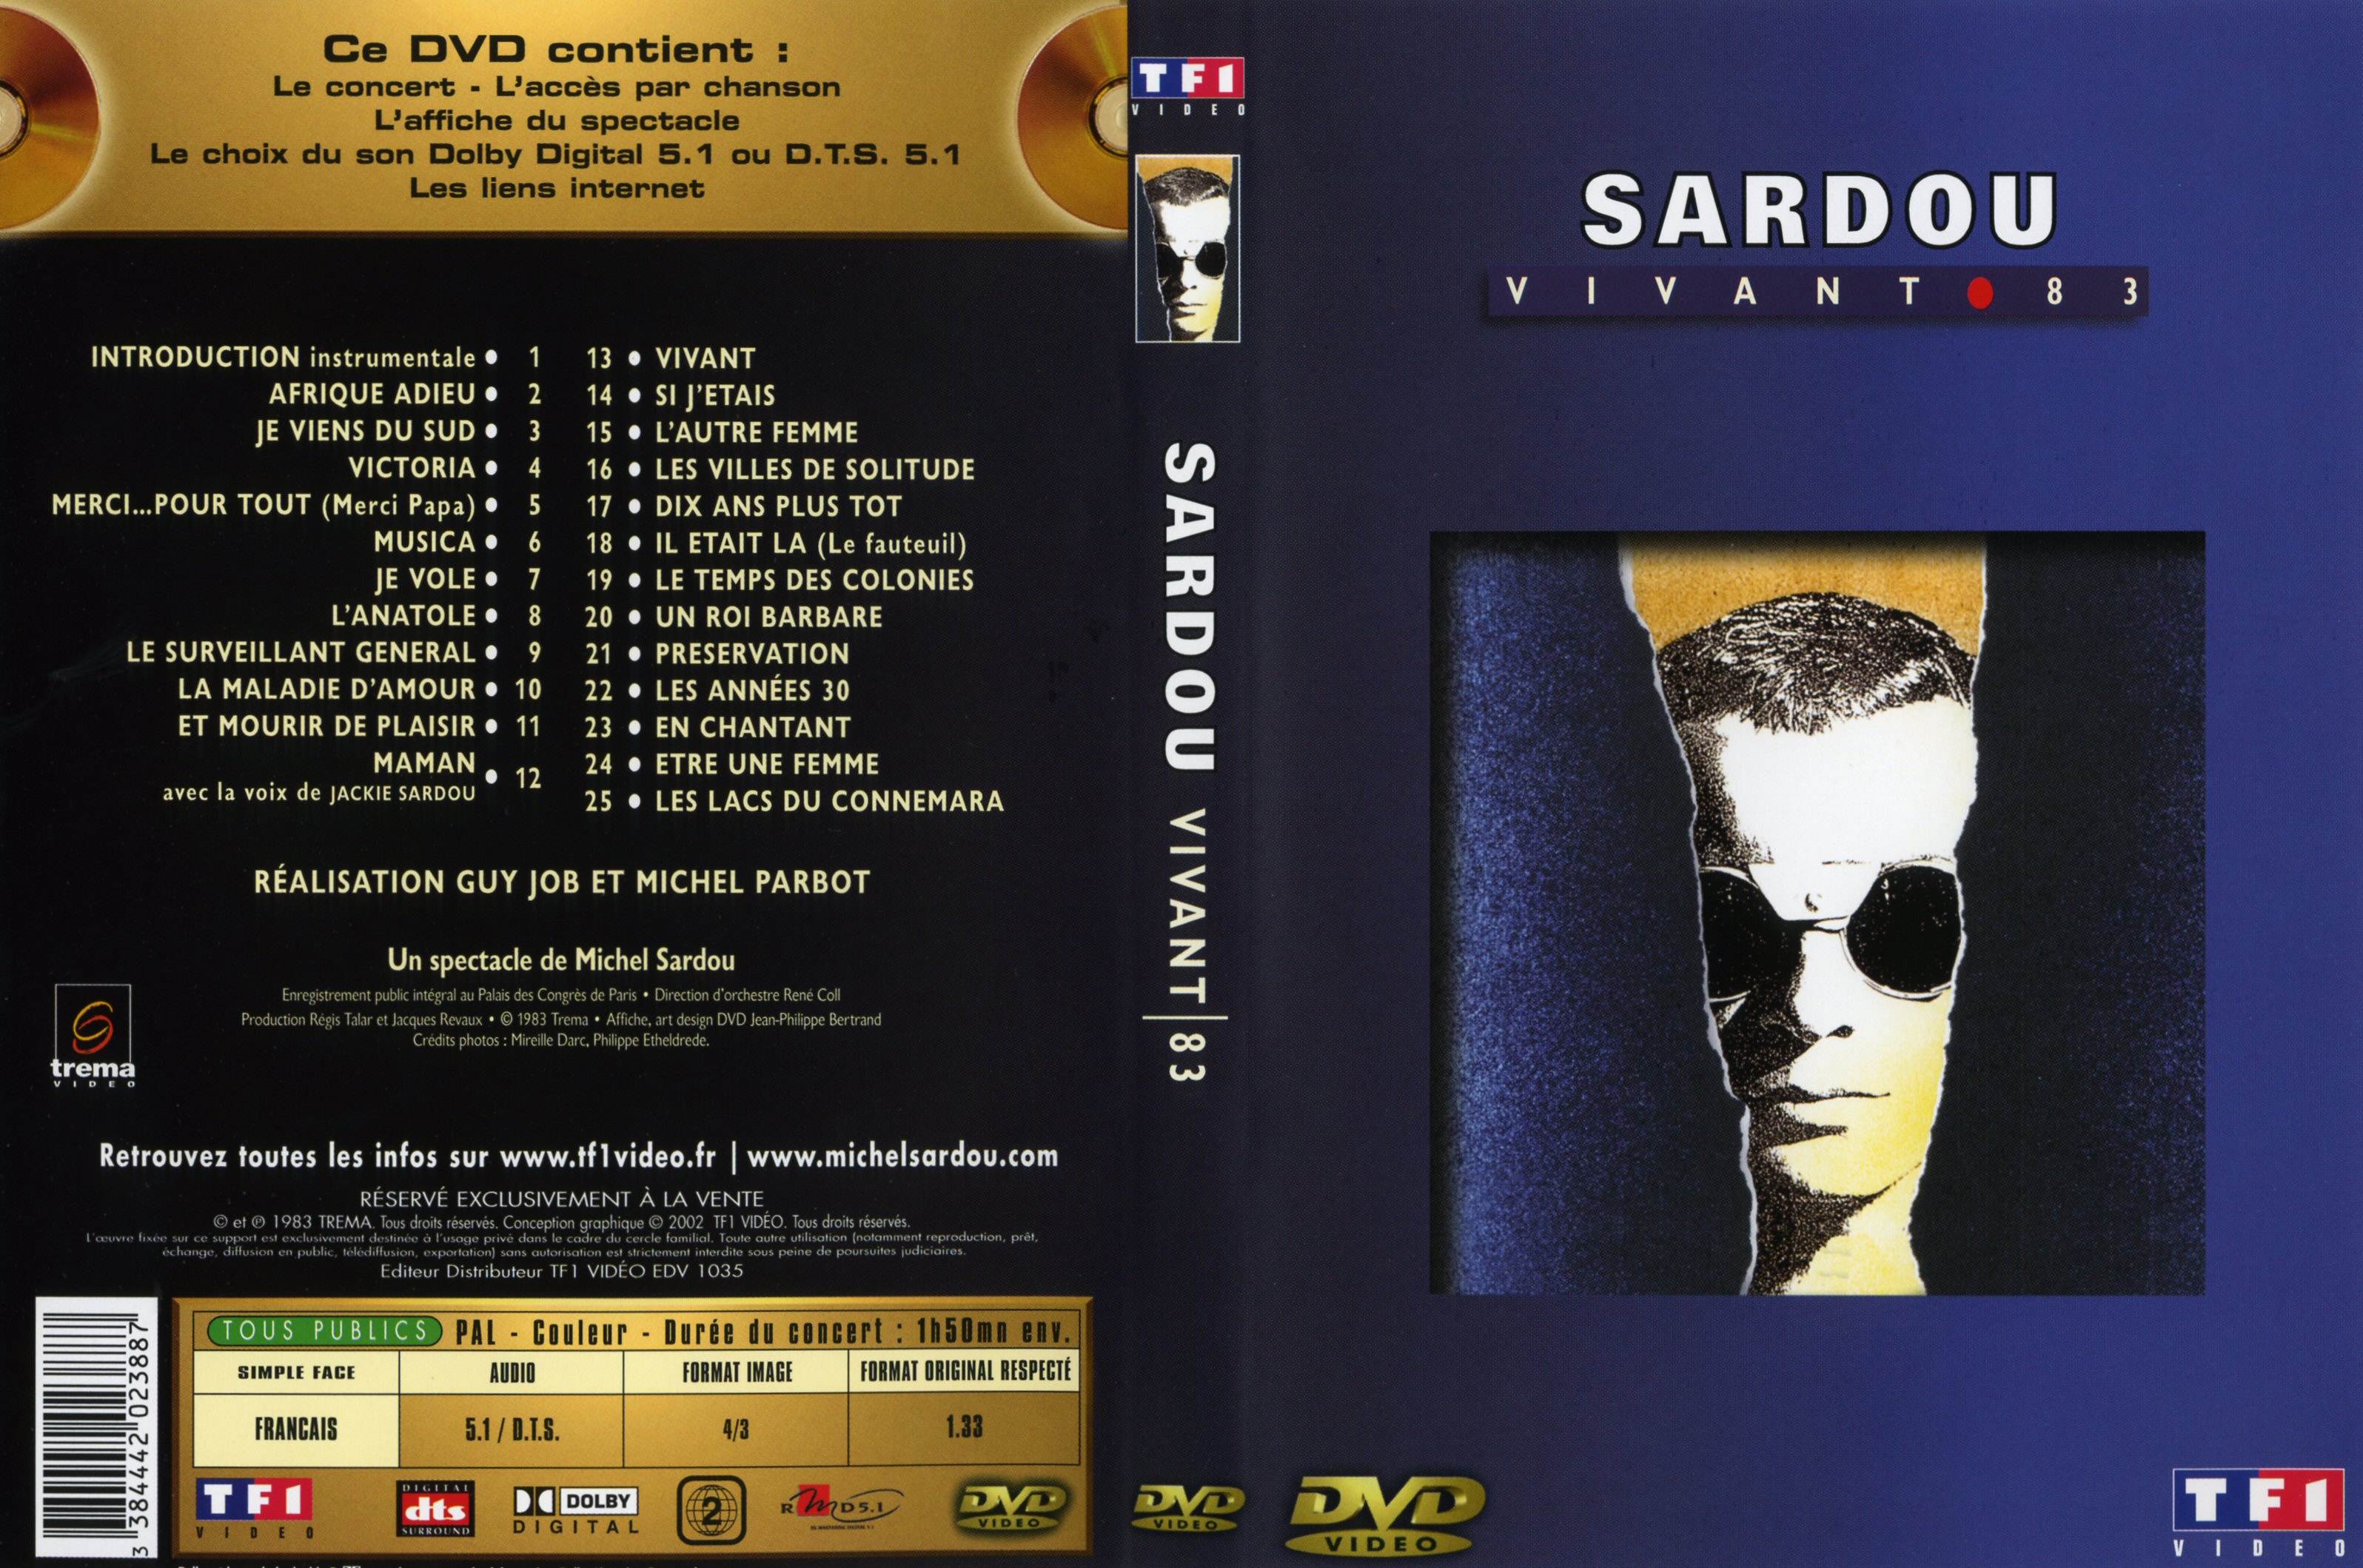 Jaquette DVD Michel Sardou Vivant 83